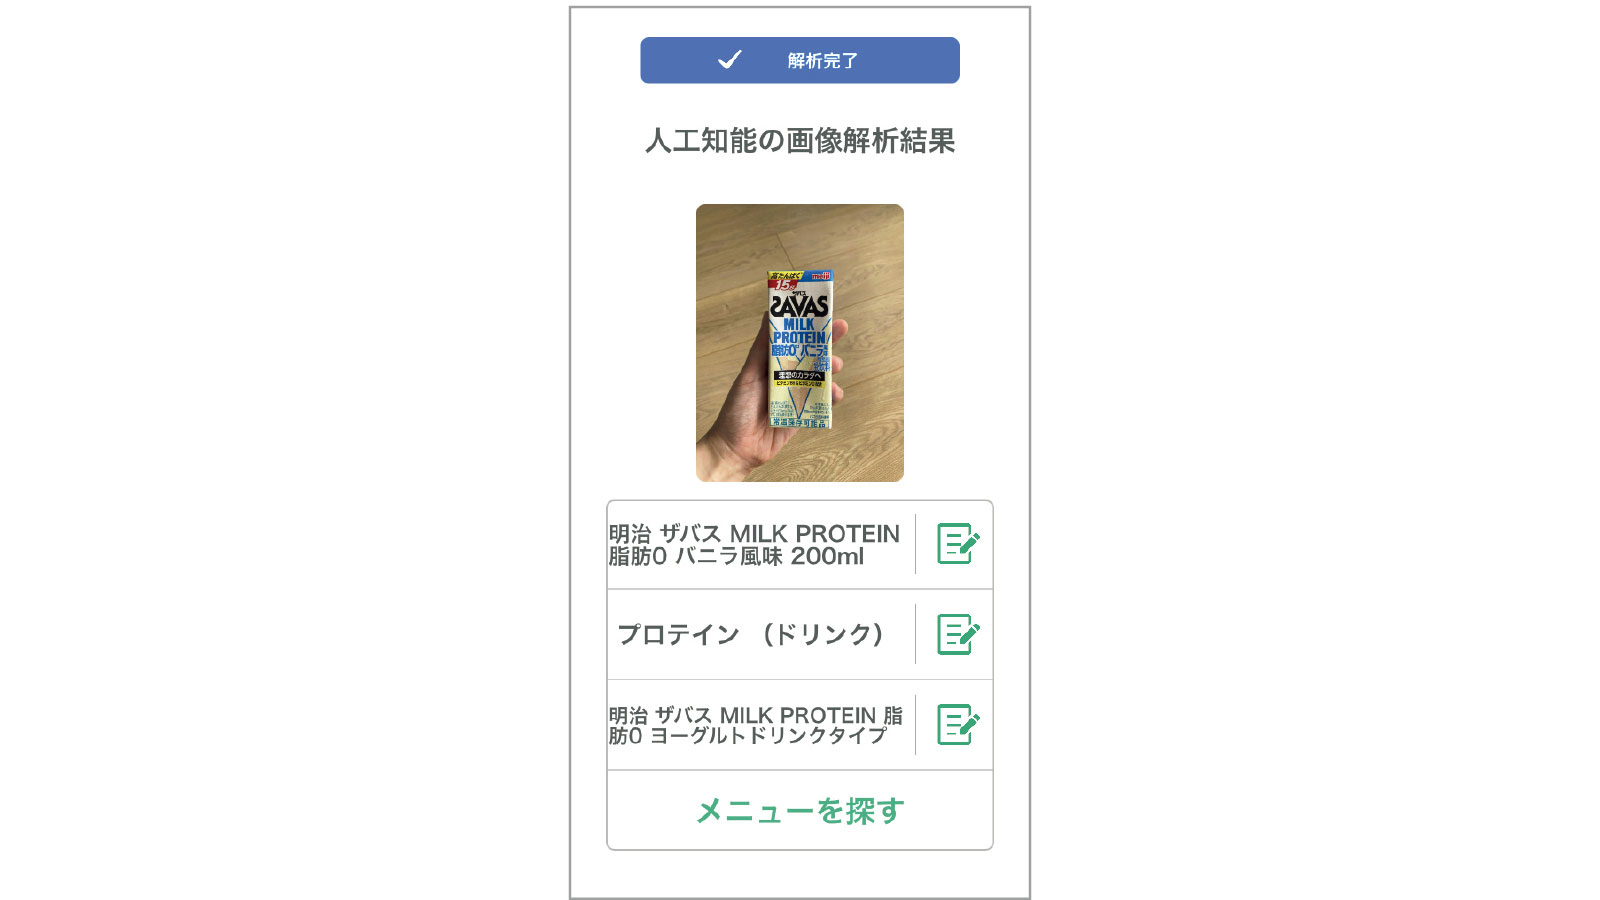 岡田隆さん 健康管理アプリ カロミル デジタルデバイス活用術